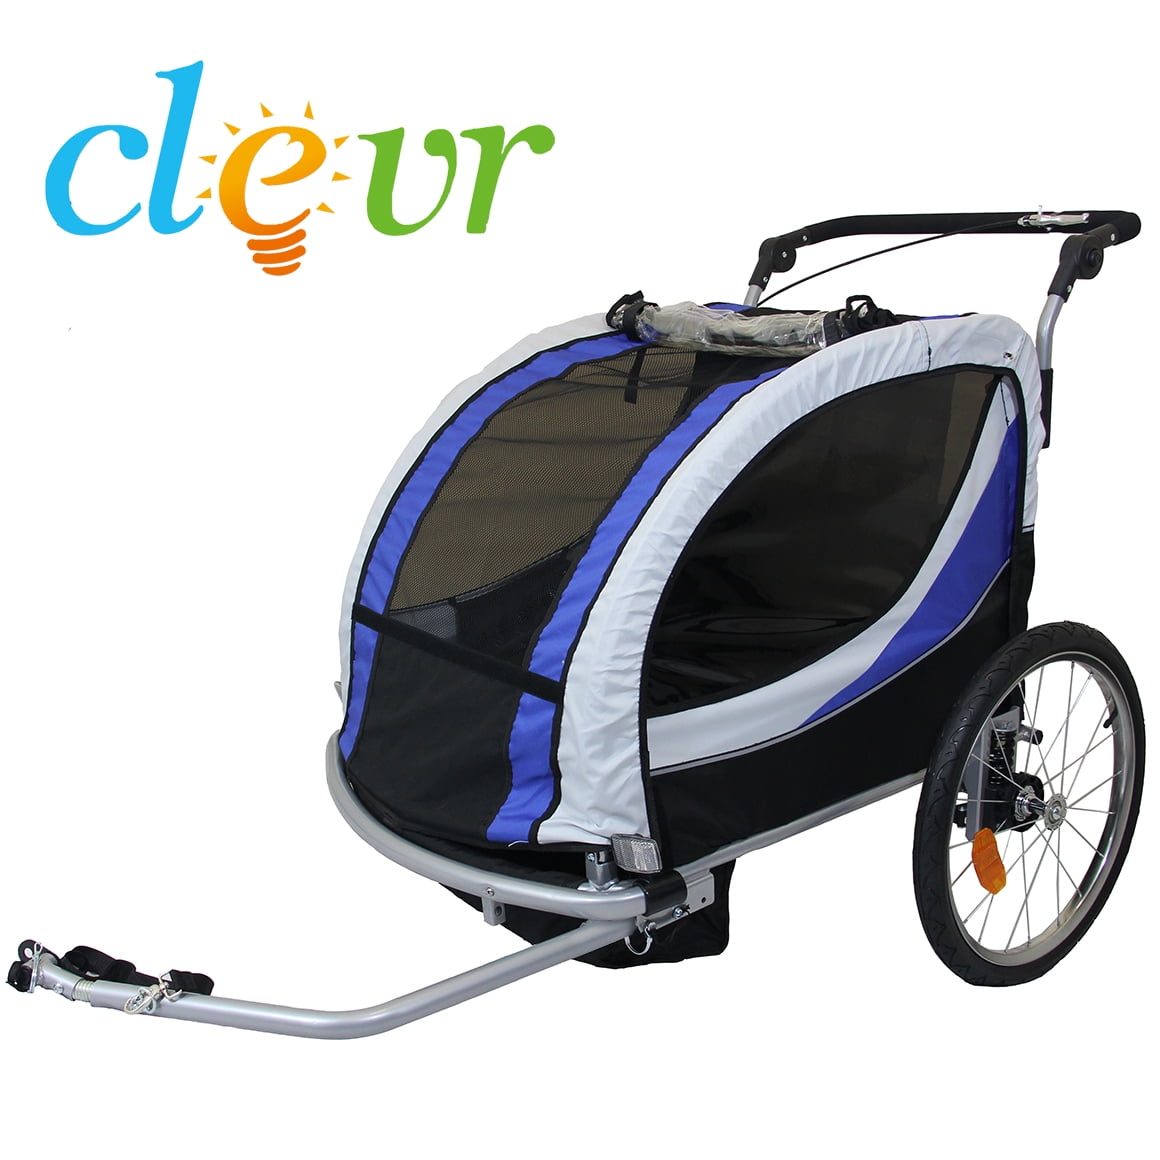 2 seater jogging stroller